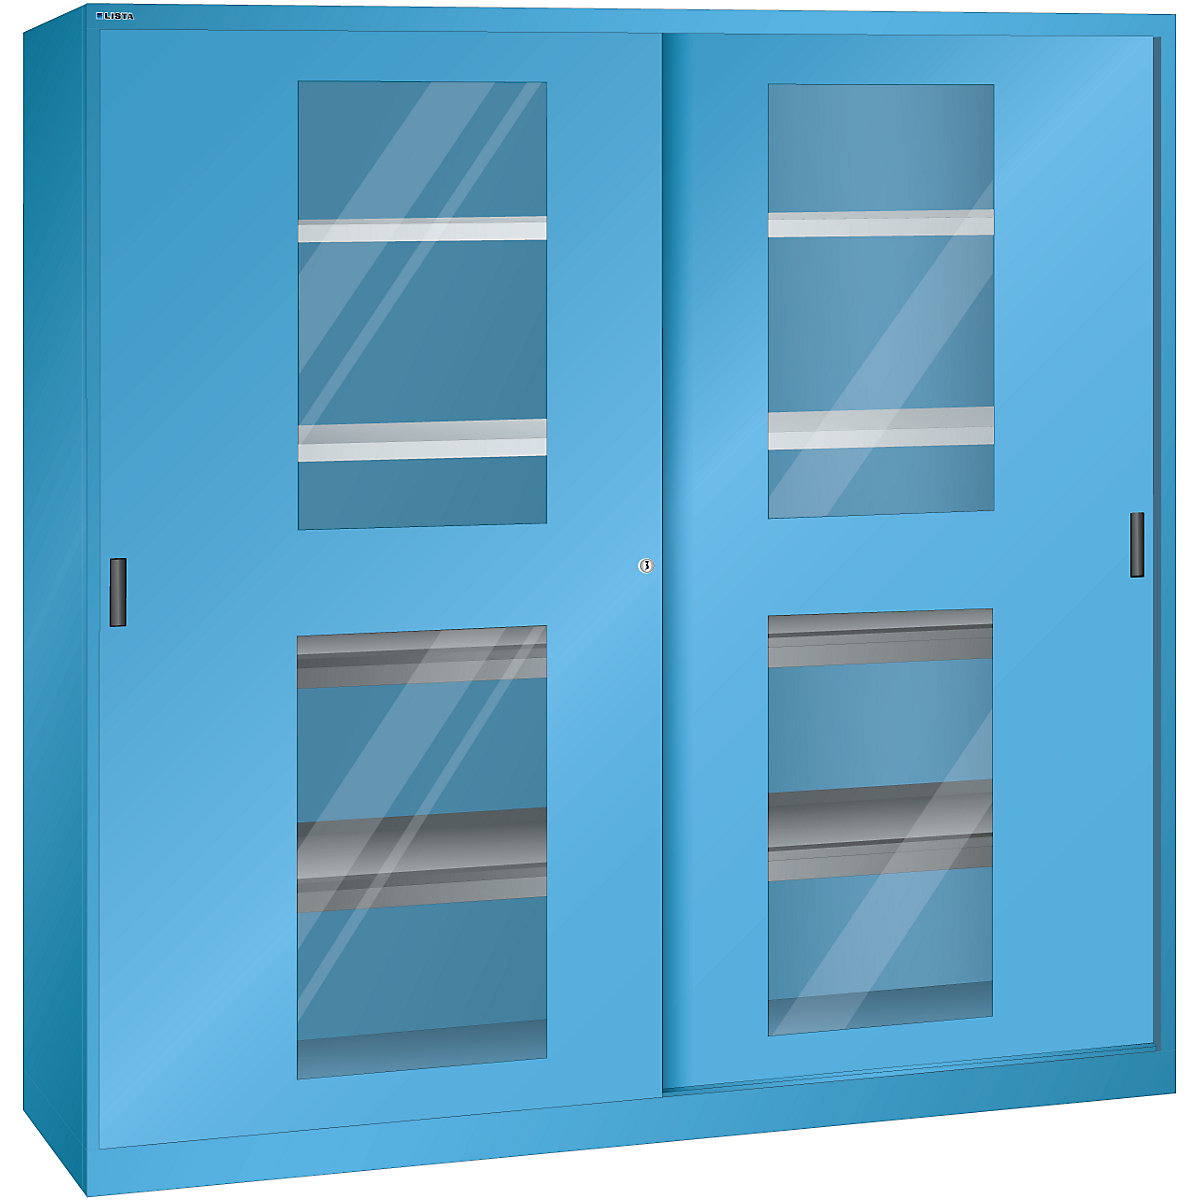 Dulap cu uși glisante cu geamuri transparente – LISTA, 4 polițe, 4 polițe extensibile, albastru deschis-8